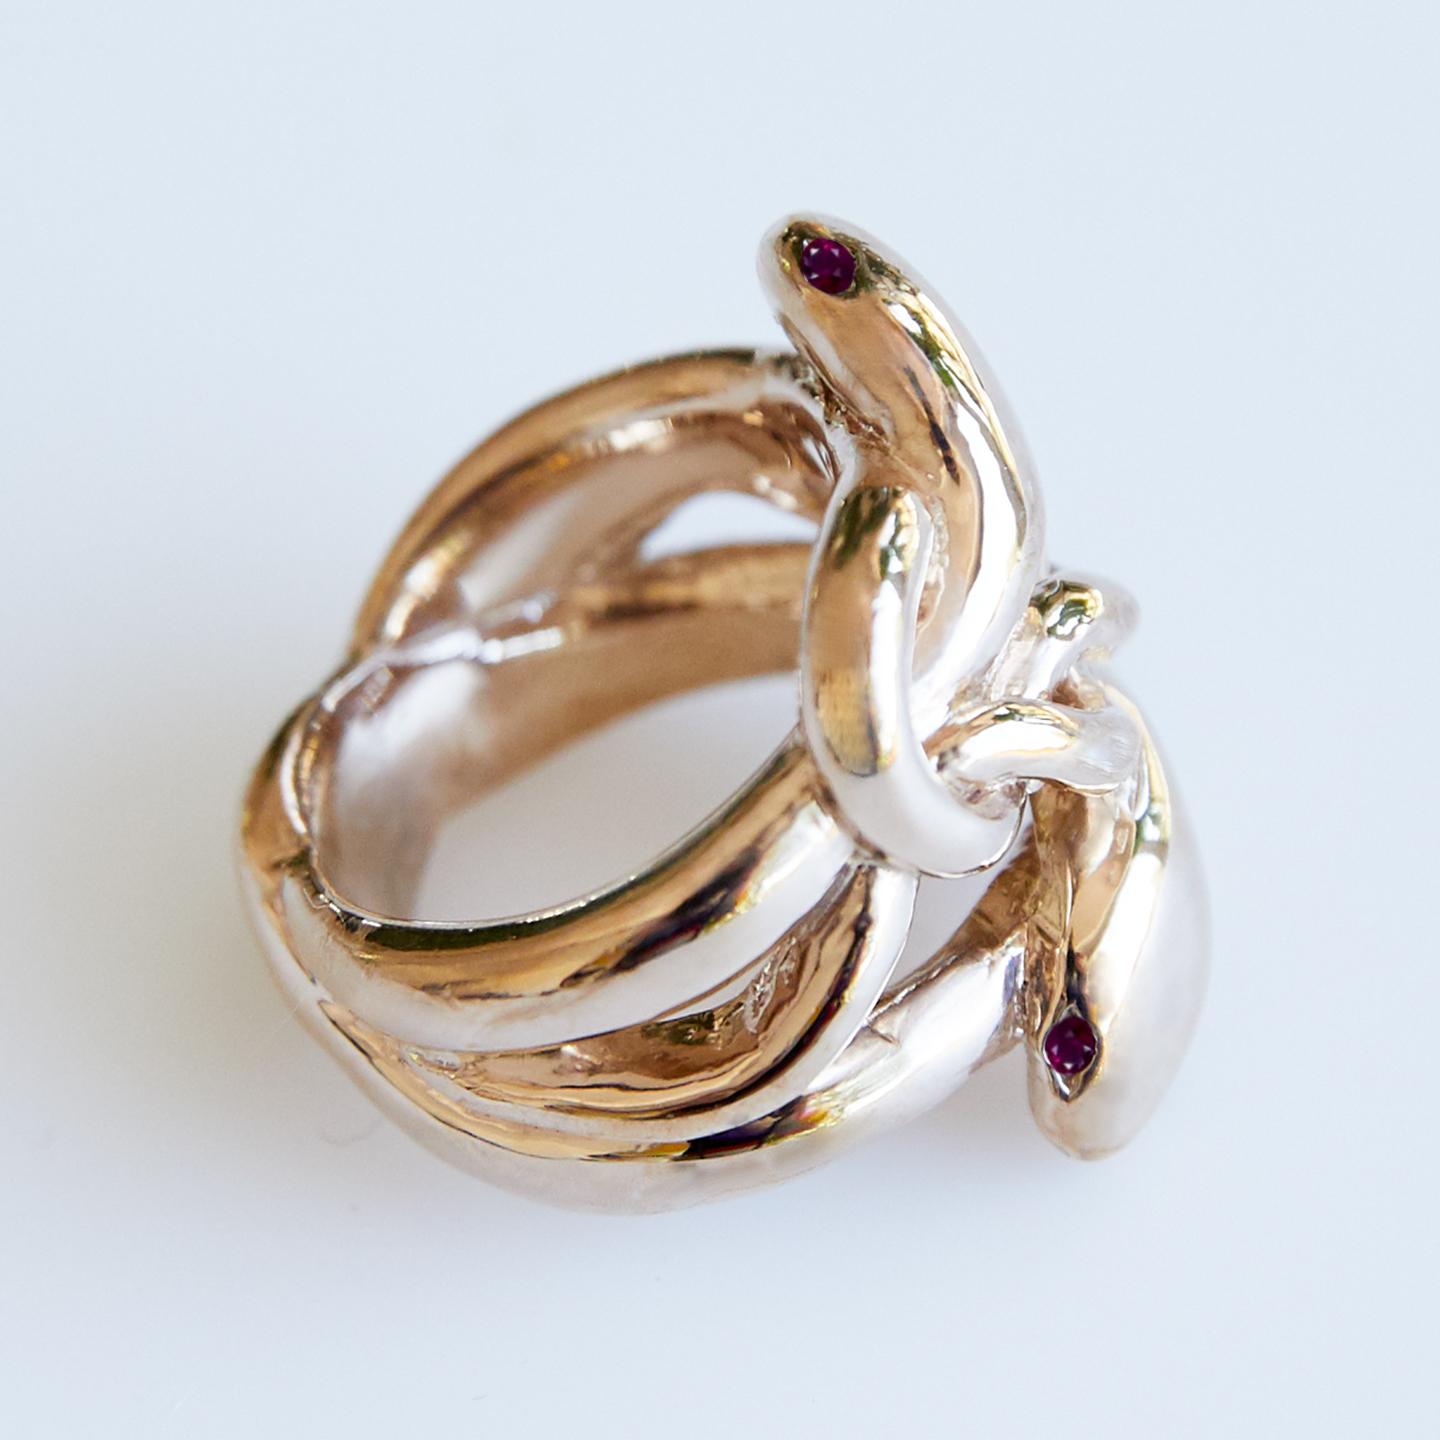 Rubin-Goldschlangen-Ring Cocktail-Ring im viktorianischen Stil J DAUPHIN
J DAUPHIN 